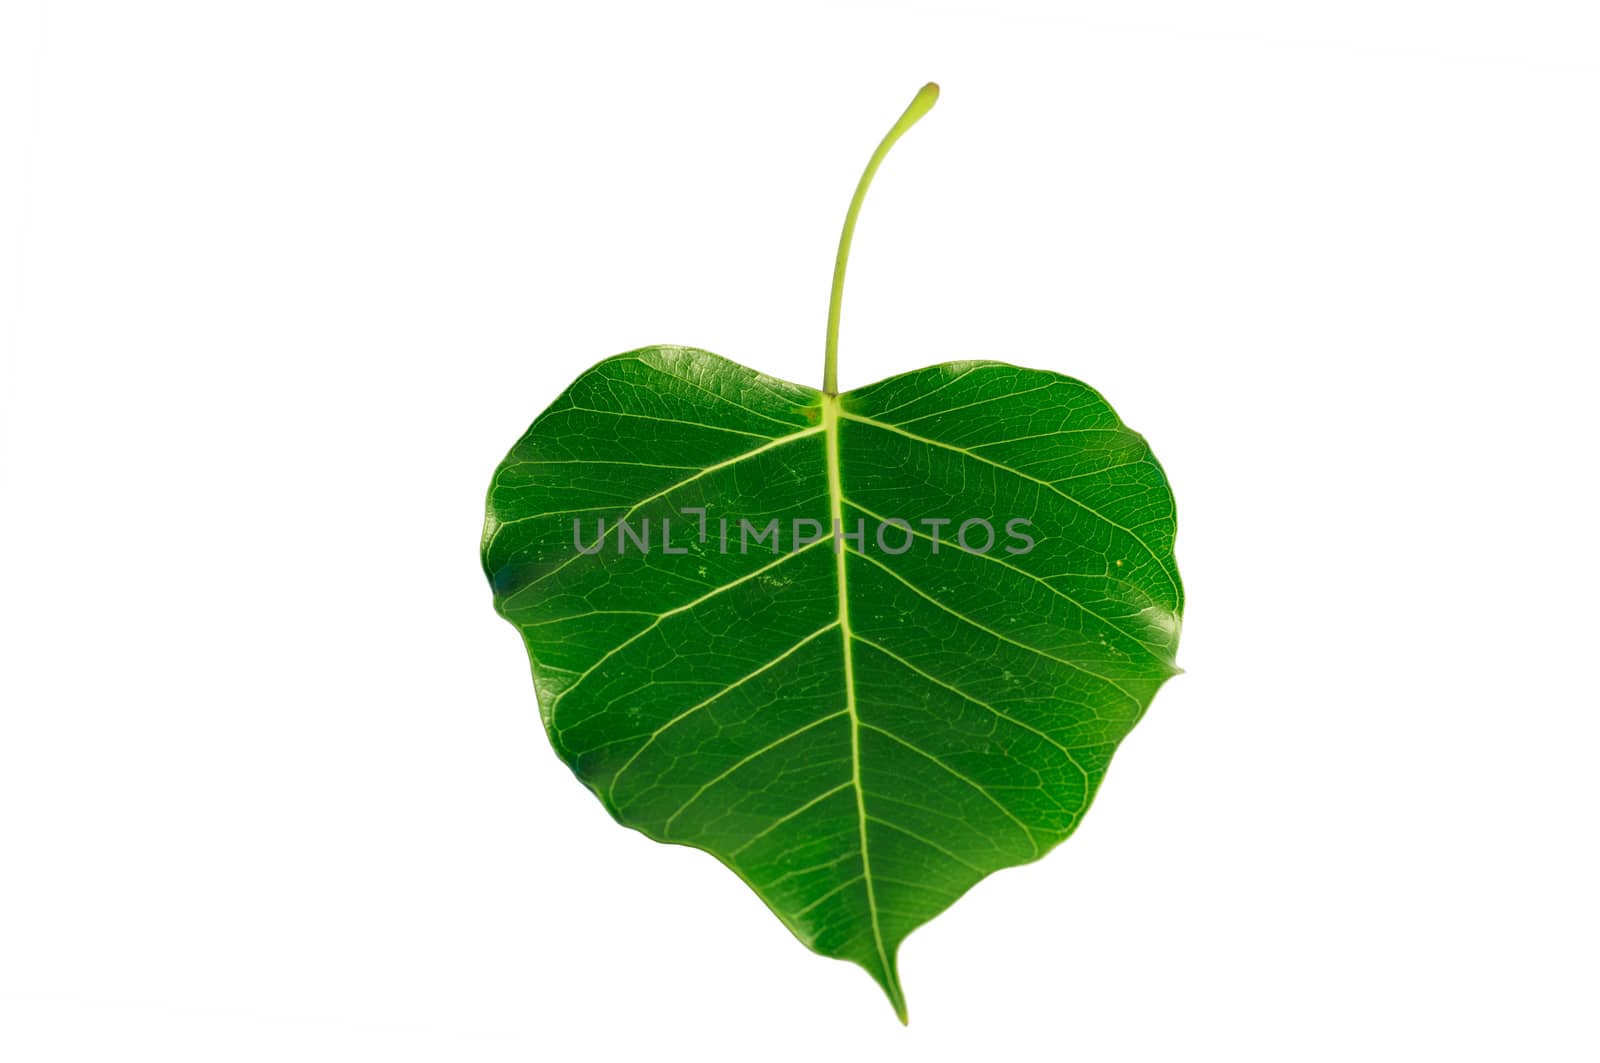 Bodhi or Peepal Leaf by Sorapop